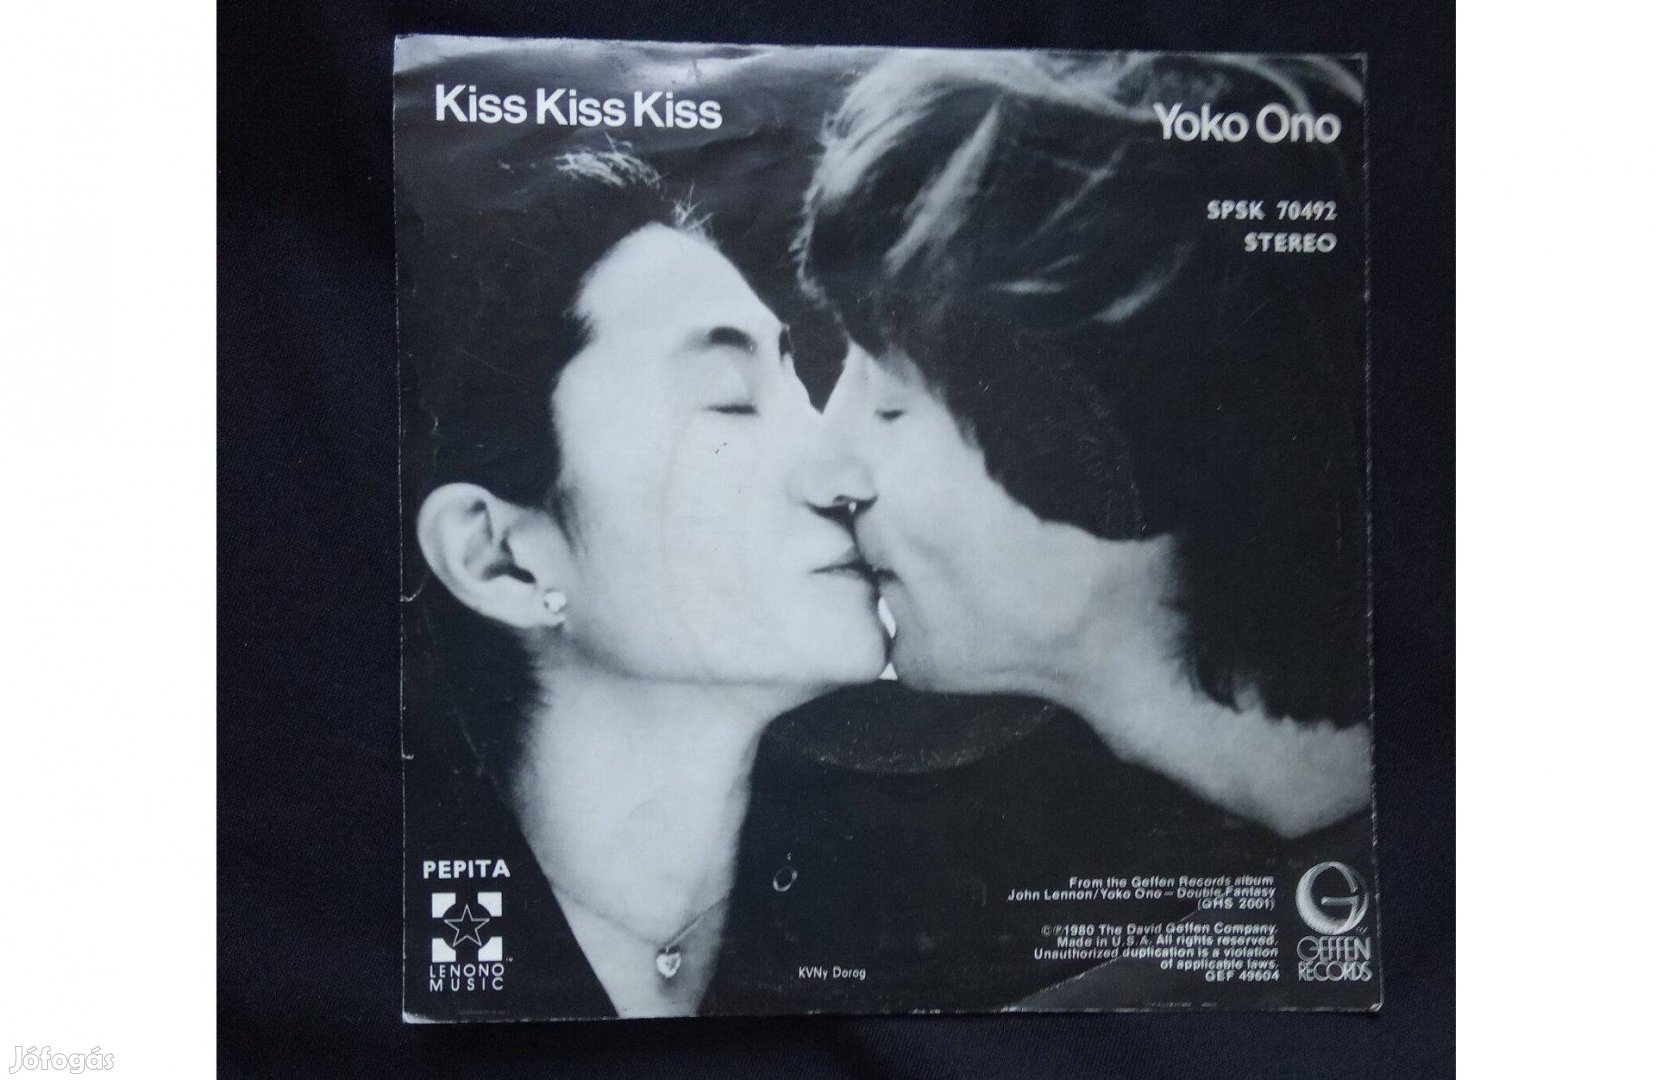 (Just Like) Starting Over Kiss Kiss Kiss sp vinyl bakelit John Lennon